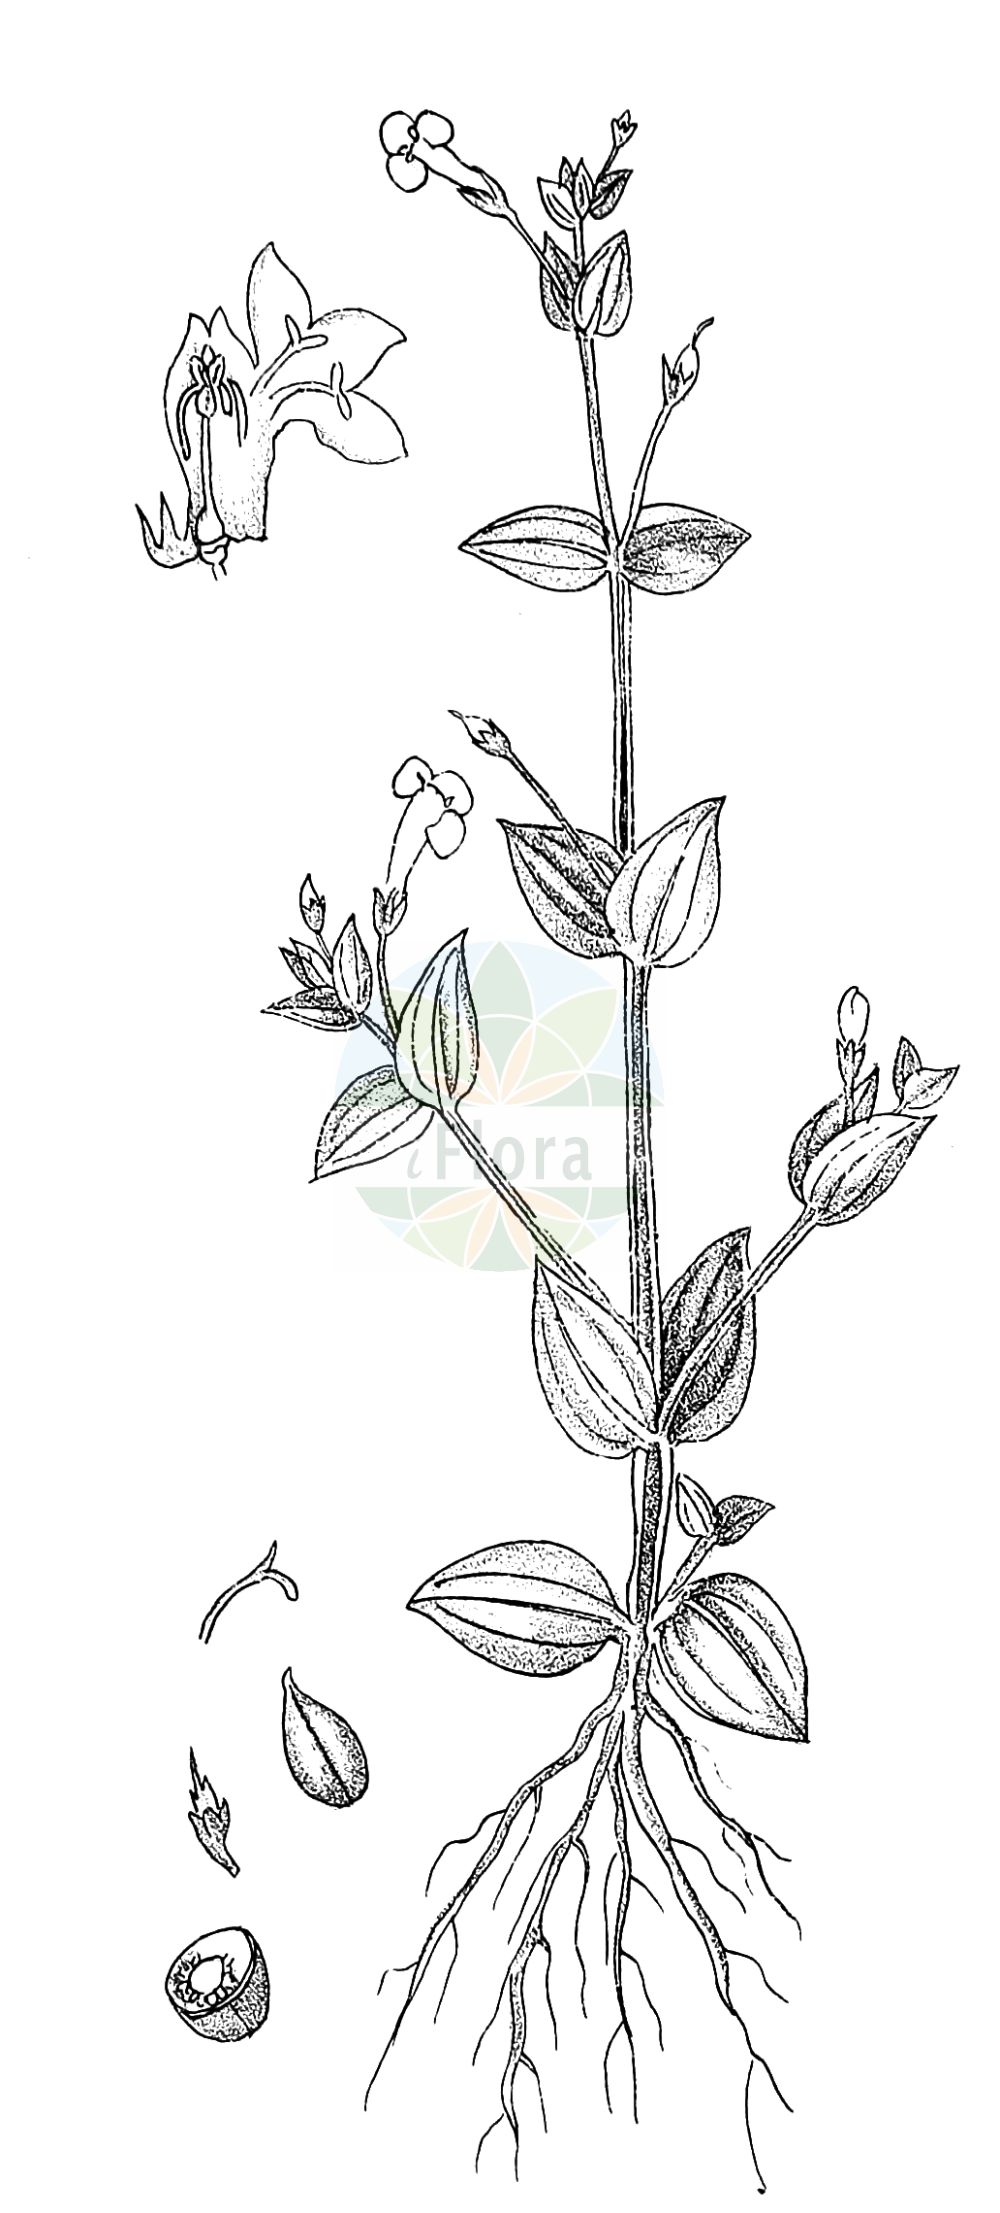 Historische Abbildung von Lindernia procumbens (Liegendes Büchsenkraut - Prostrate False-pimpernel). Das Bild zeigt Blatt, Bluete, Frucht und Same. ---- Historical Drawing of Lindernia procumbens (Liegendes Büchsenkraut - Prostrate False-pimpernel). The image is showing leaf, flower, fruit and seed.(Lindernia procumbens,Liegendes Büchsenkraut,Prostrate False-pimpernel,Anagalloides procumbens,Lindernia procumbens,Lindernia pyxidaria,Liegendes Buechsenkraut,Prostrate False-pimpernel,Common False Pimpernel,Lindernia,Büchsenkraut,False Pimpernel,Linderniaceae,Büchsenkrautgewächse,False Pimpernel family,Blatt,Bluete,Frucht,Same,leaf,flower,fruit,seed,Kirtikar & Basu (1918))